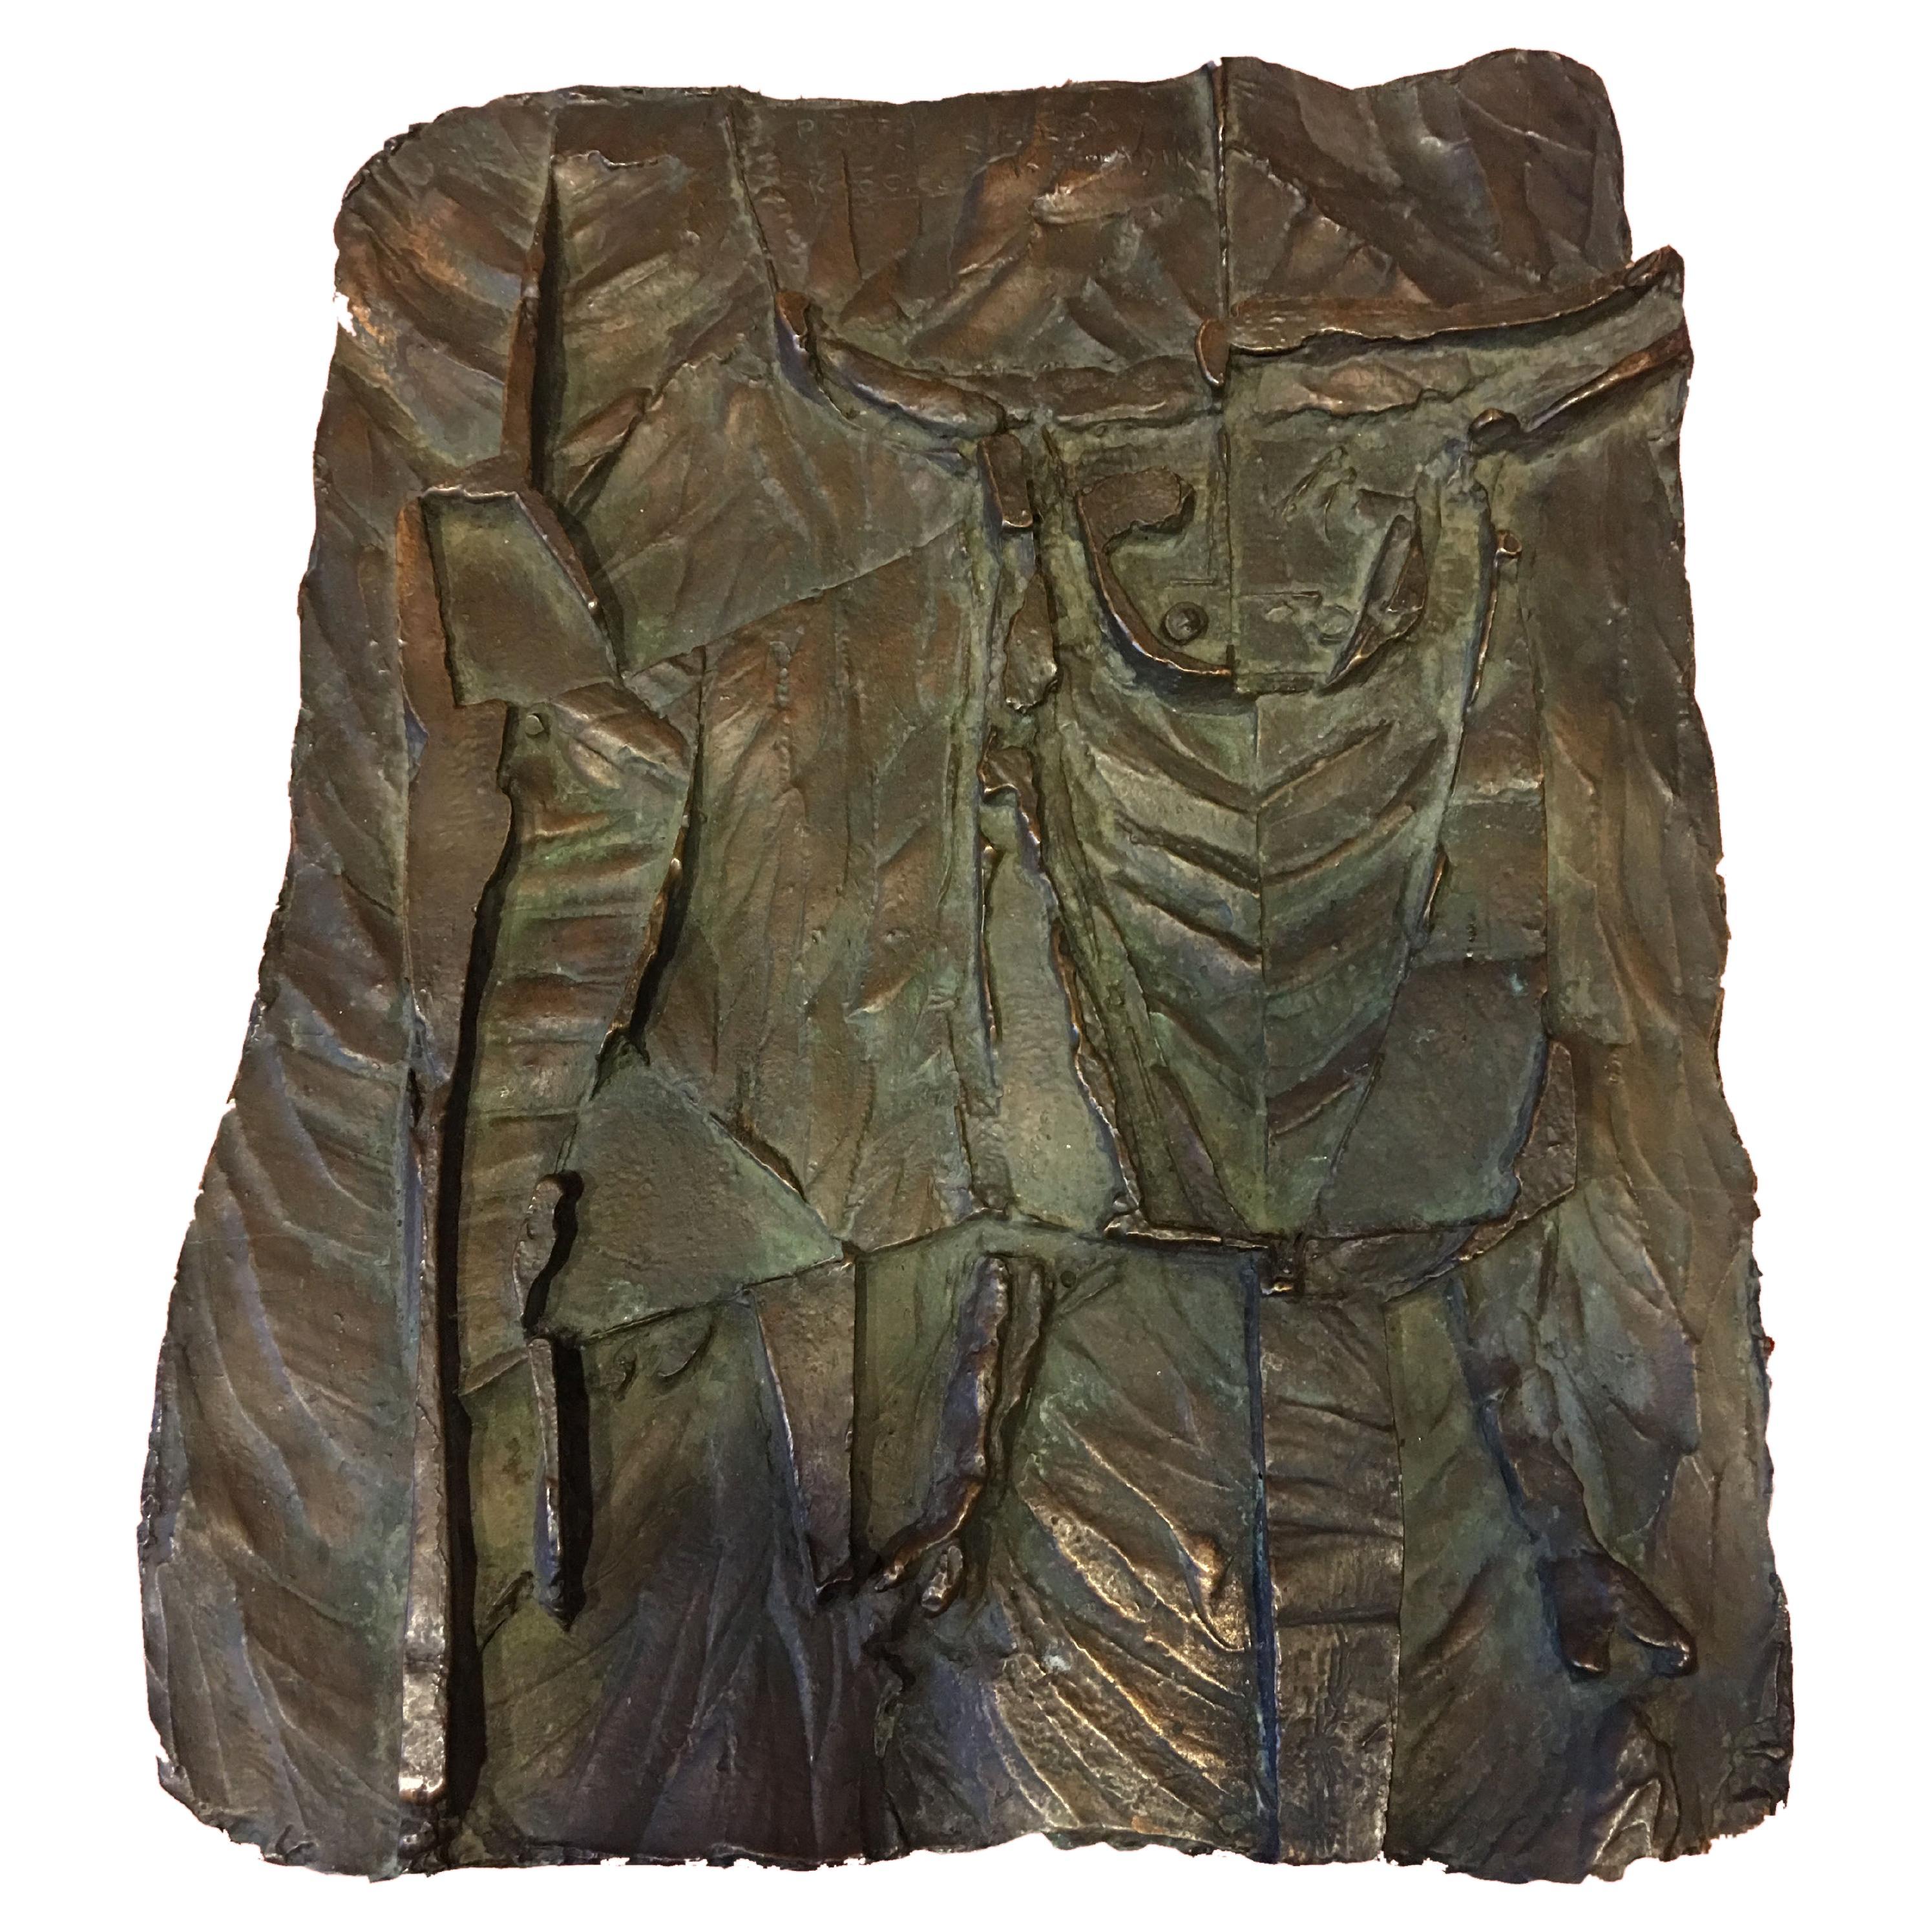 Bronzeskulptur von Karel Hladik, die einen Stier darstellt